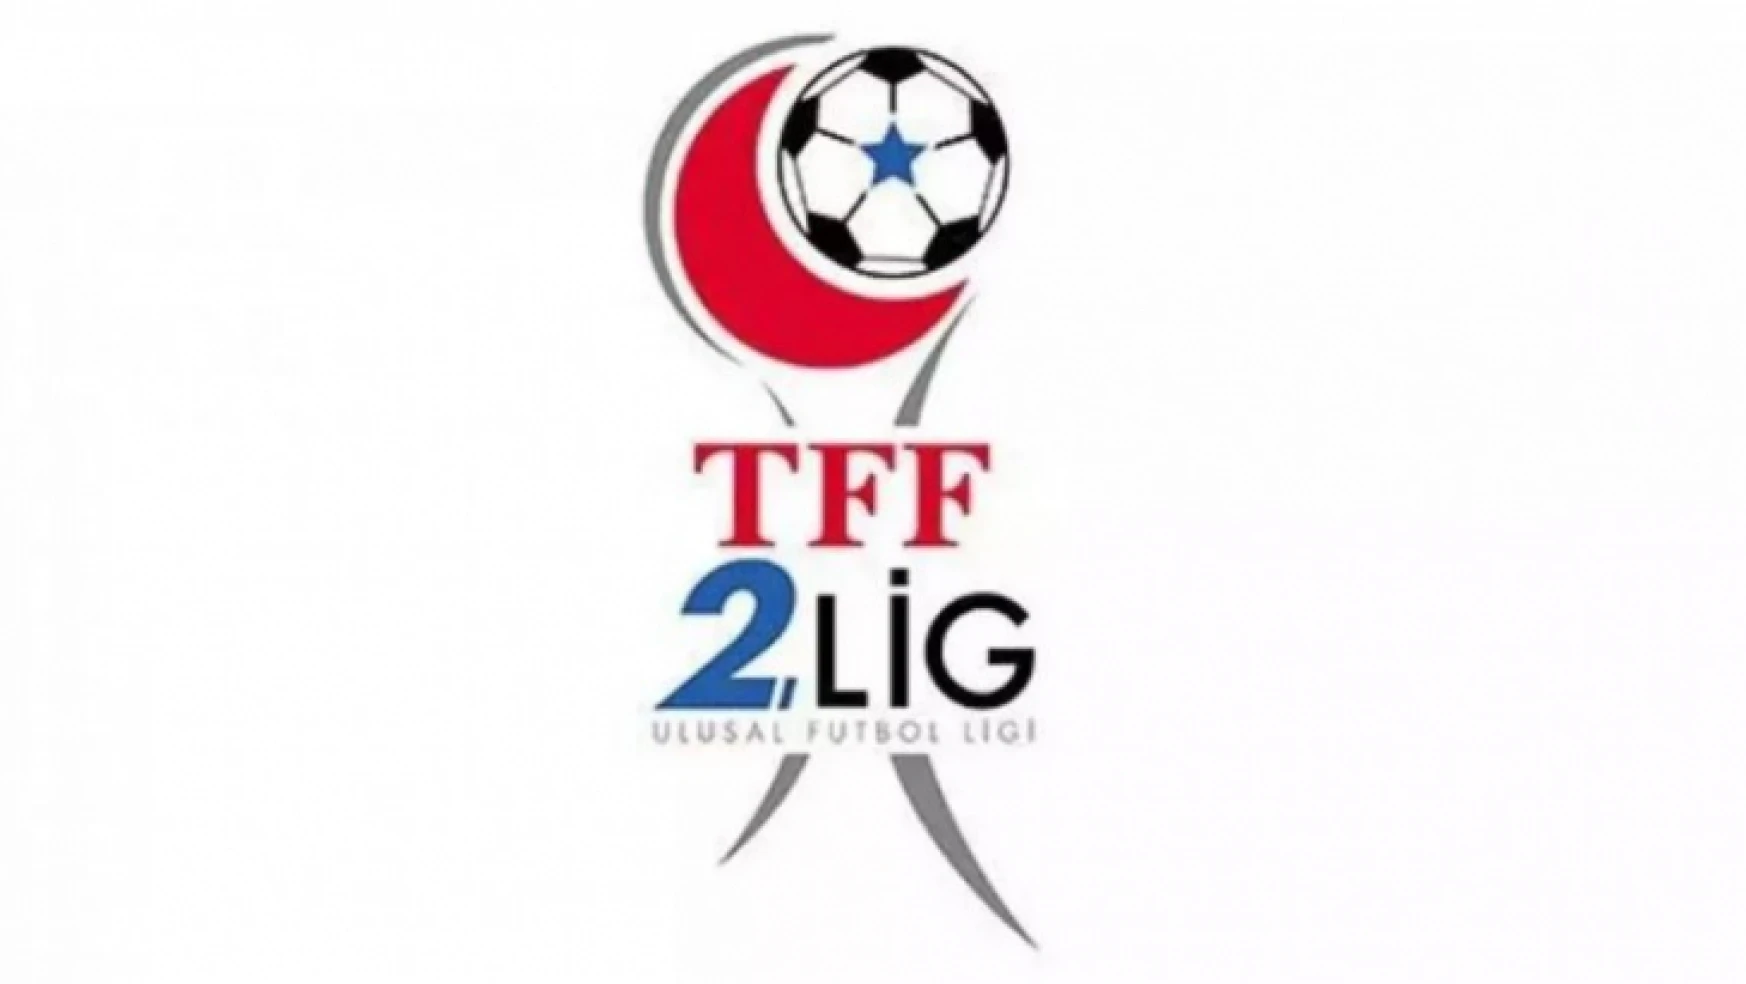 TFF 2. Lig'de play-off ikinci tur programı açıklandı